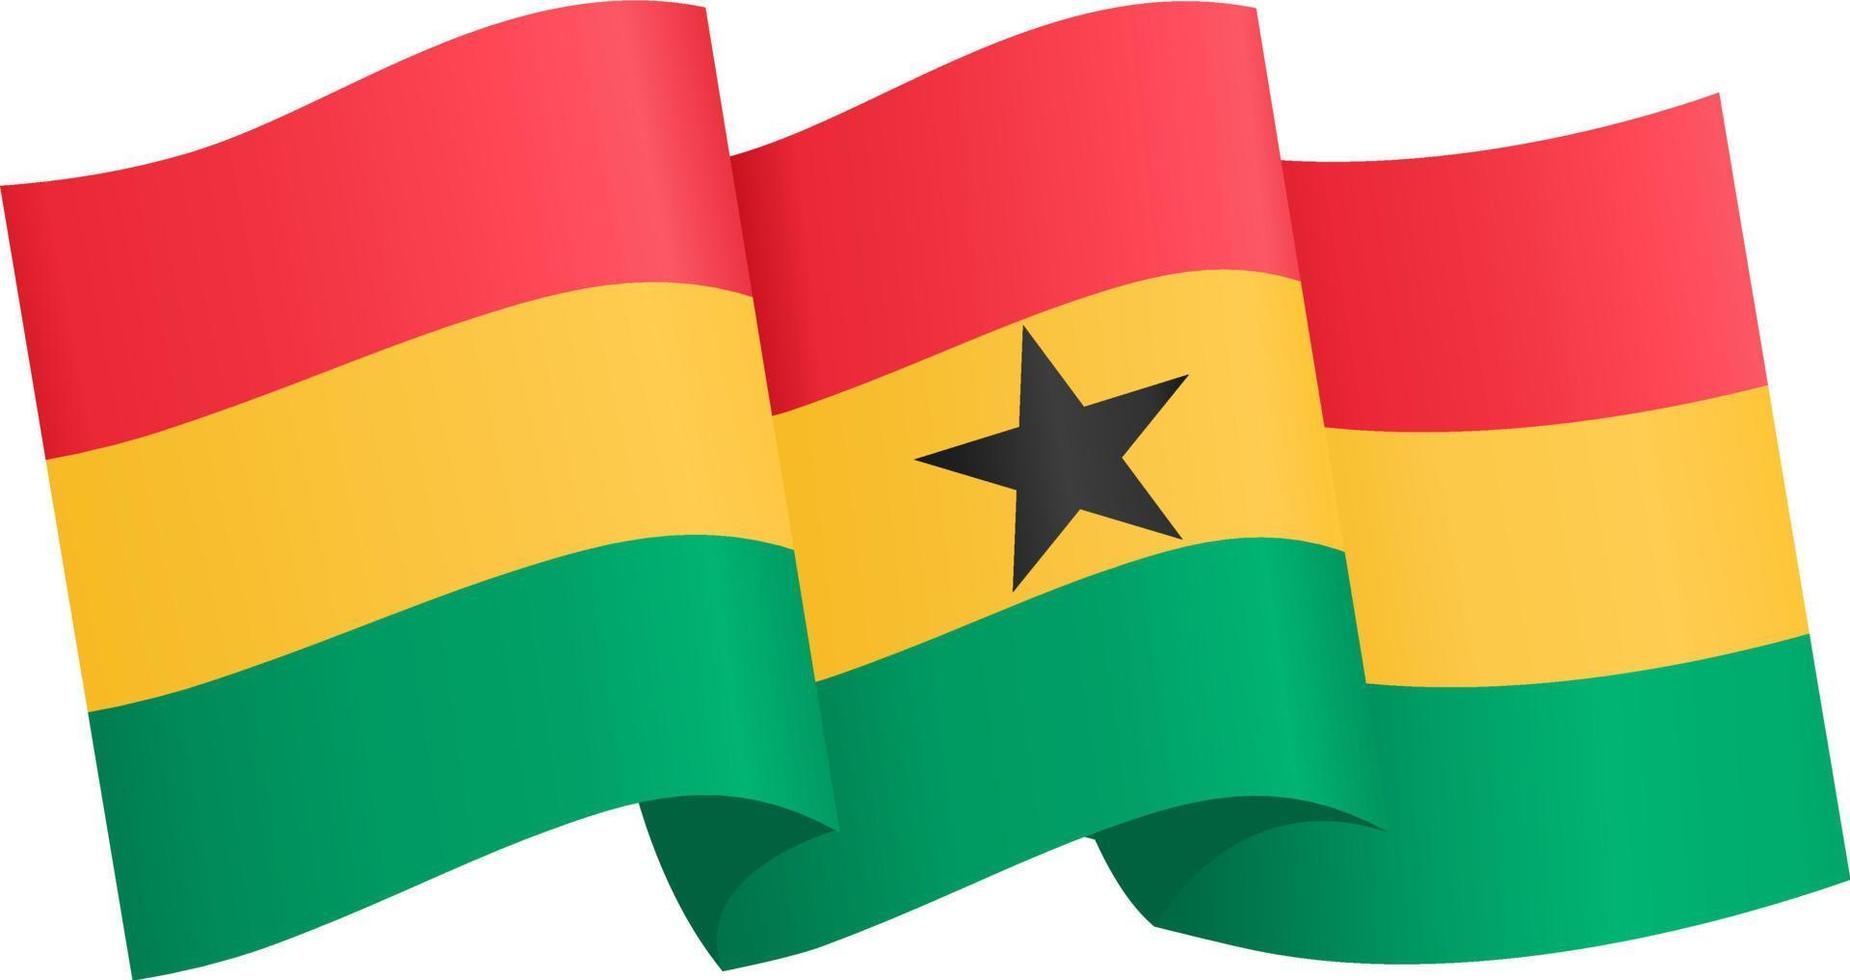 Cờ Ghana trên nền trong suốt PNG sẽ giúp bạn tạo ra những hình ảnh độc đáo và thu hút sự chú ý của người khác. Với những màu sắc chói lọi và thiết kế đơn giản nhưng đầy ý nghĩa, cờ Ghana sẽ mang lại một điểm nhấn đặc biệt cho thiết bị của bạn.